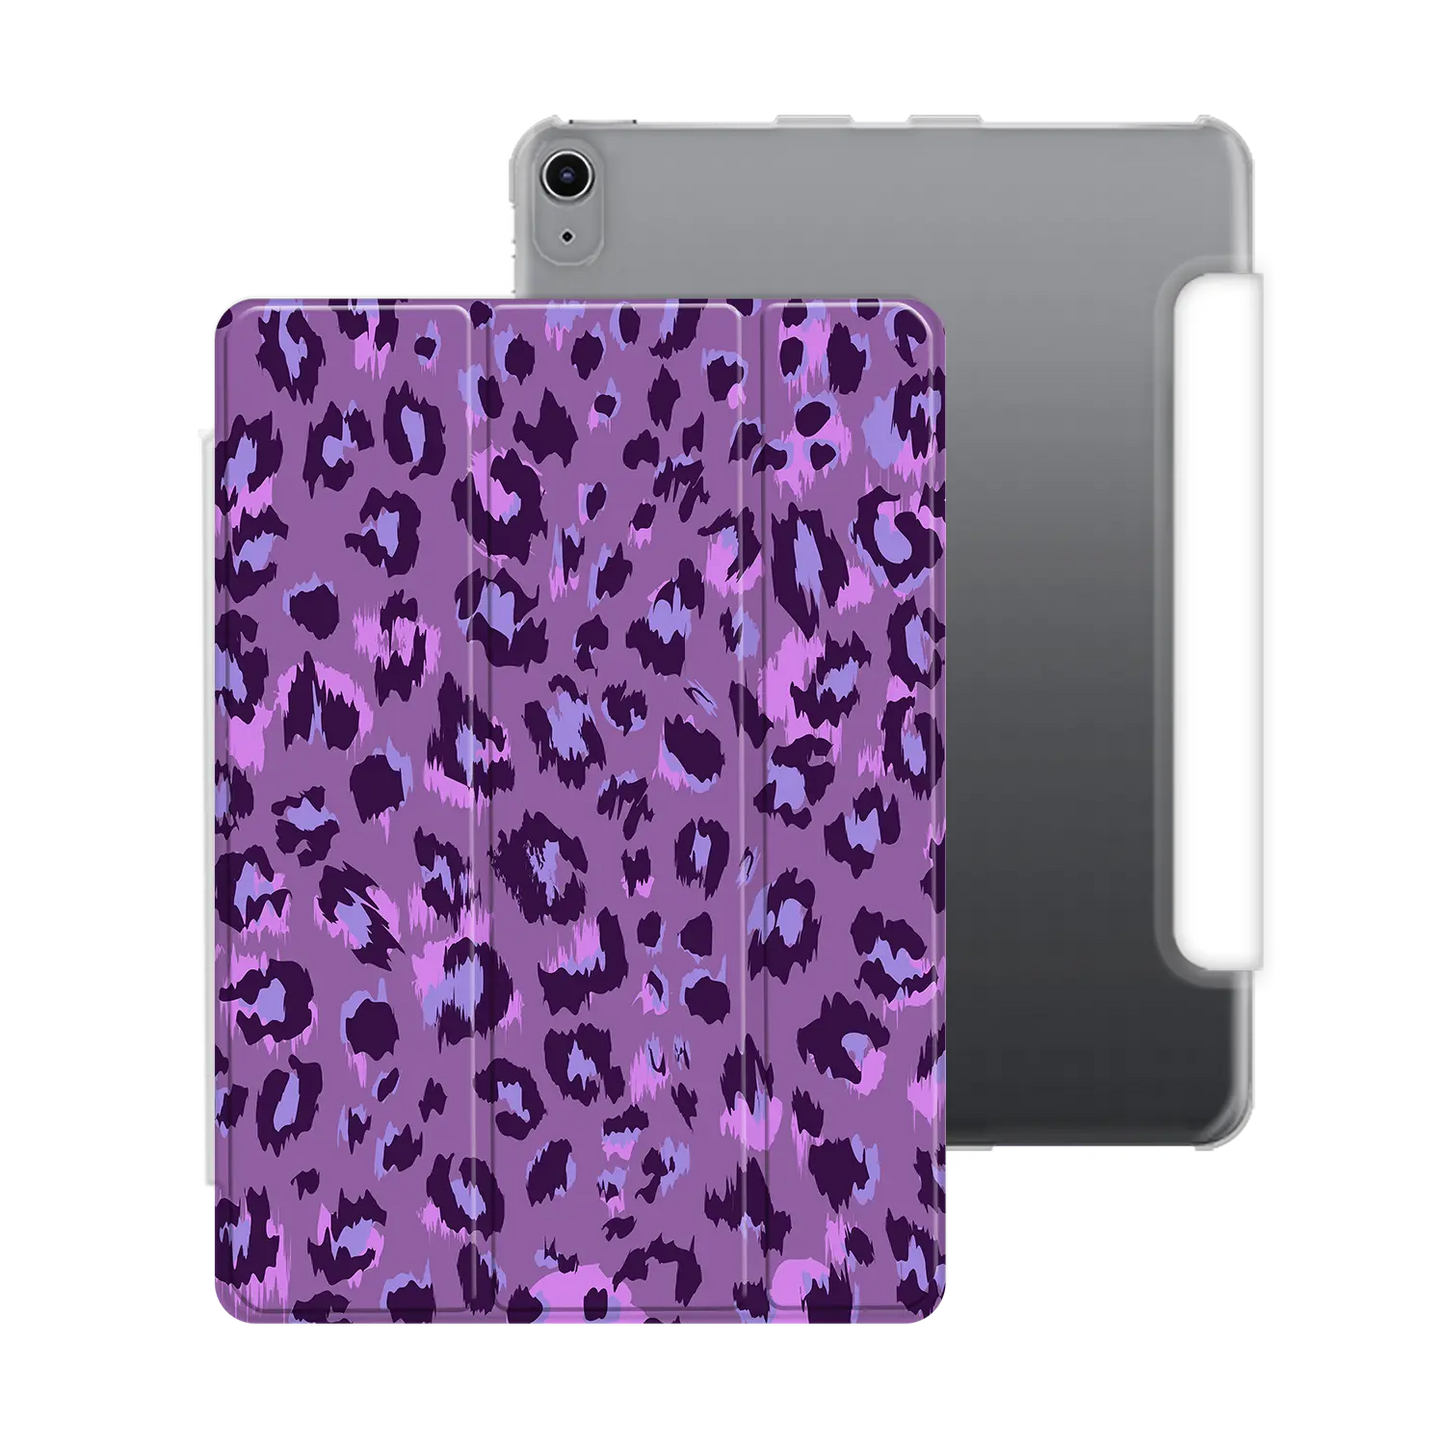 Impresión guepardo salvaje - iPad personalizado carcasa